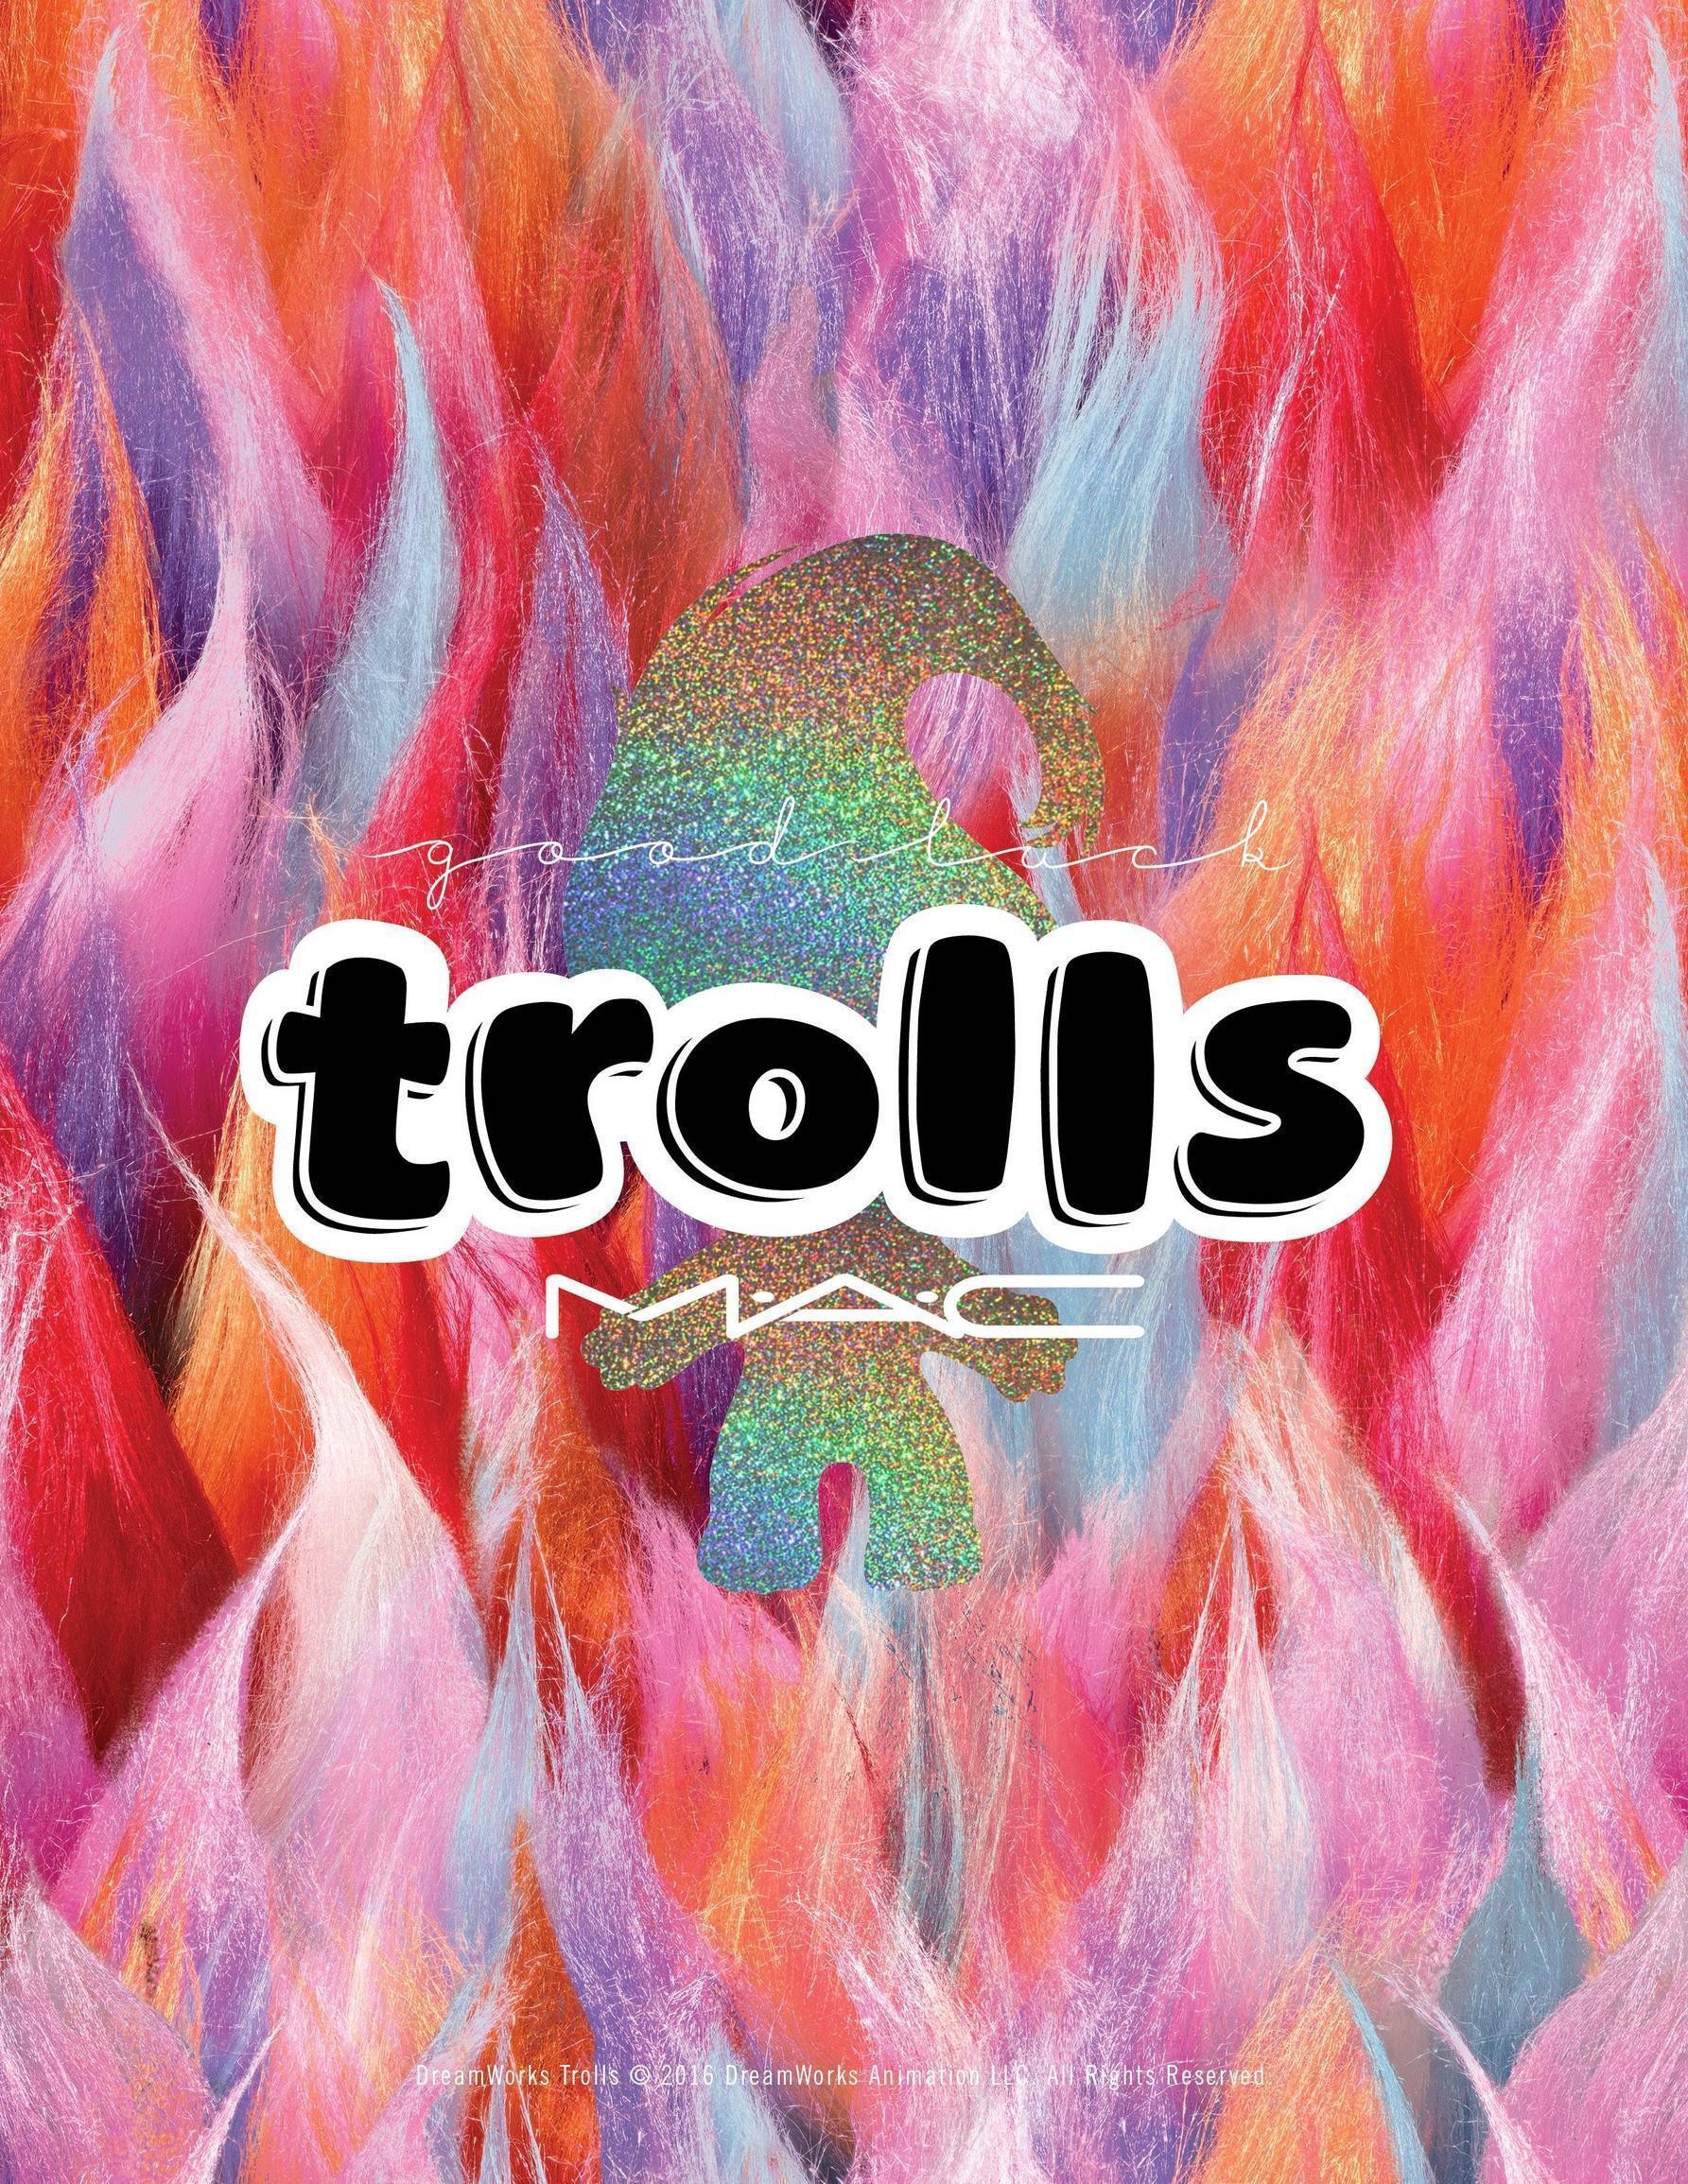 Trolls Wallpapers - Mac Cosmetics Trolls - HD Wallpaper 